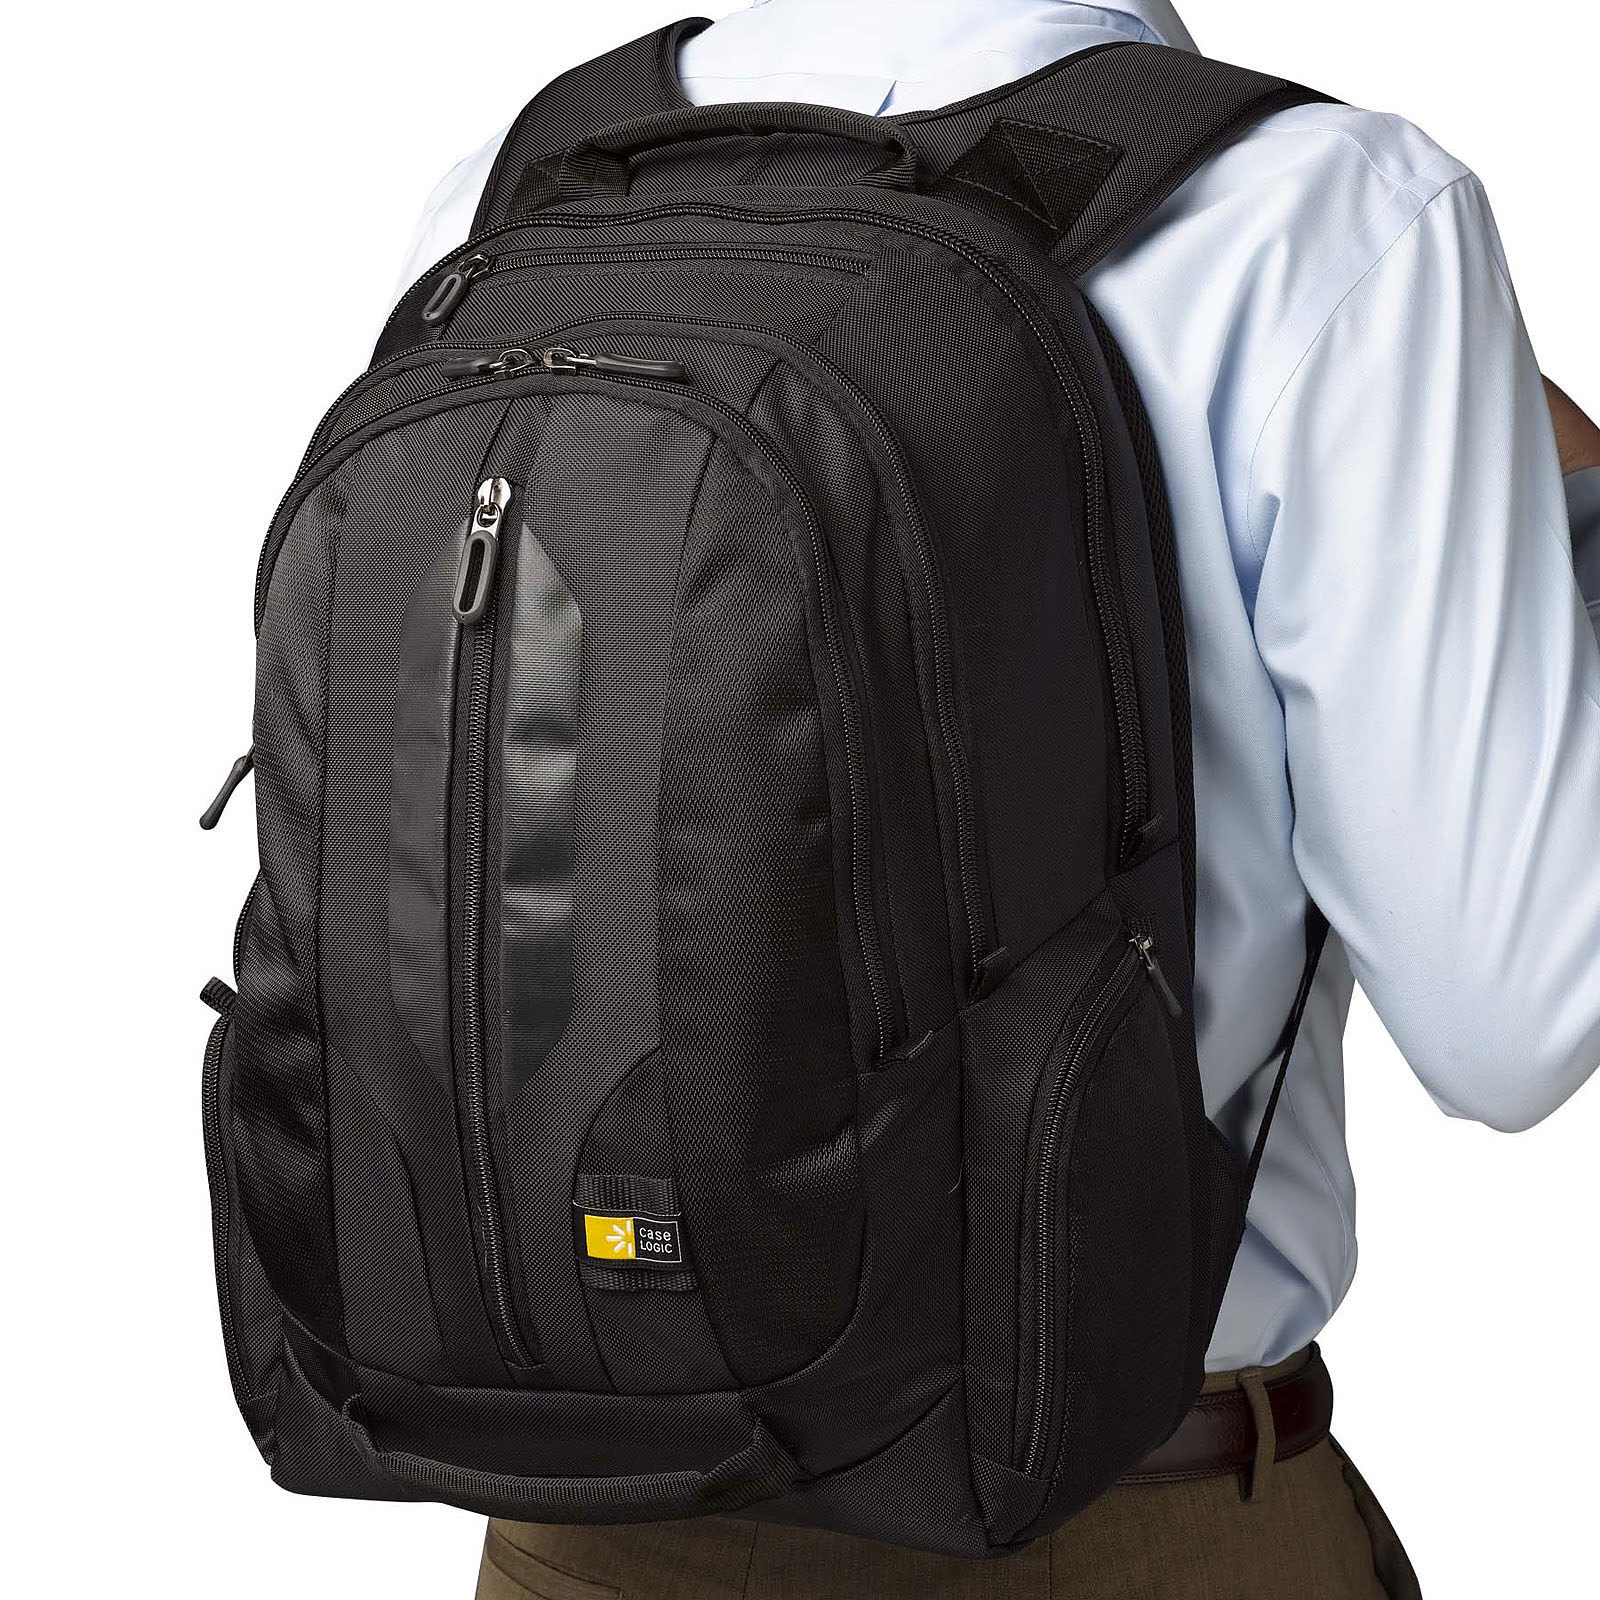 17.3" Laptop Backpack RBP217 - Achat / Vente sur grosbill-pro.com - 1